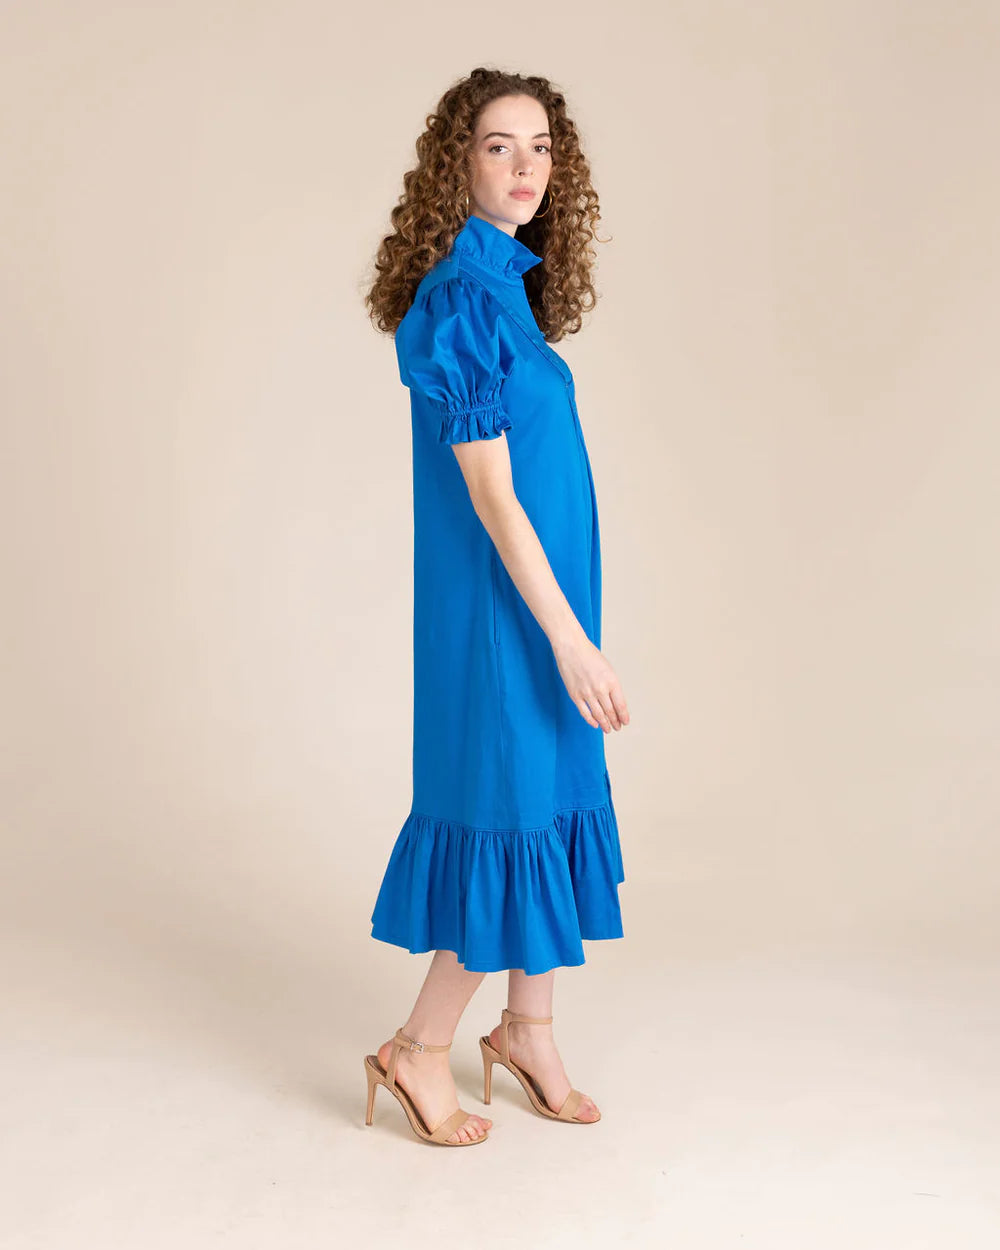 Women in blue midi dress